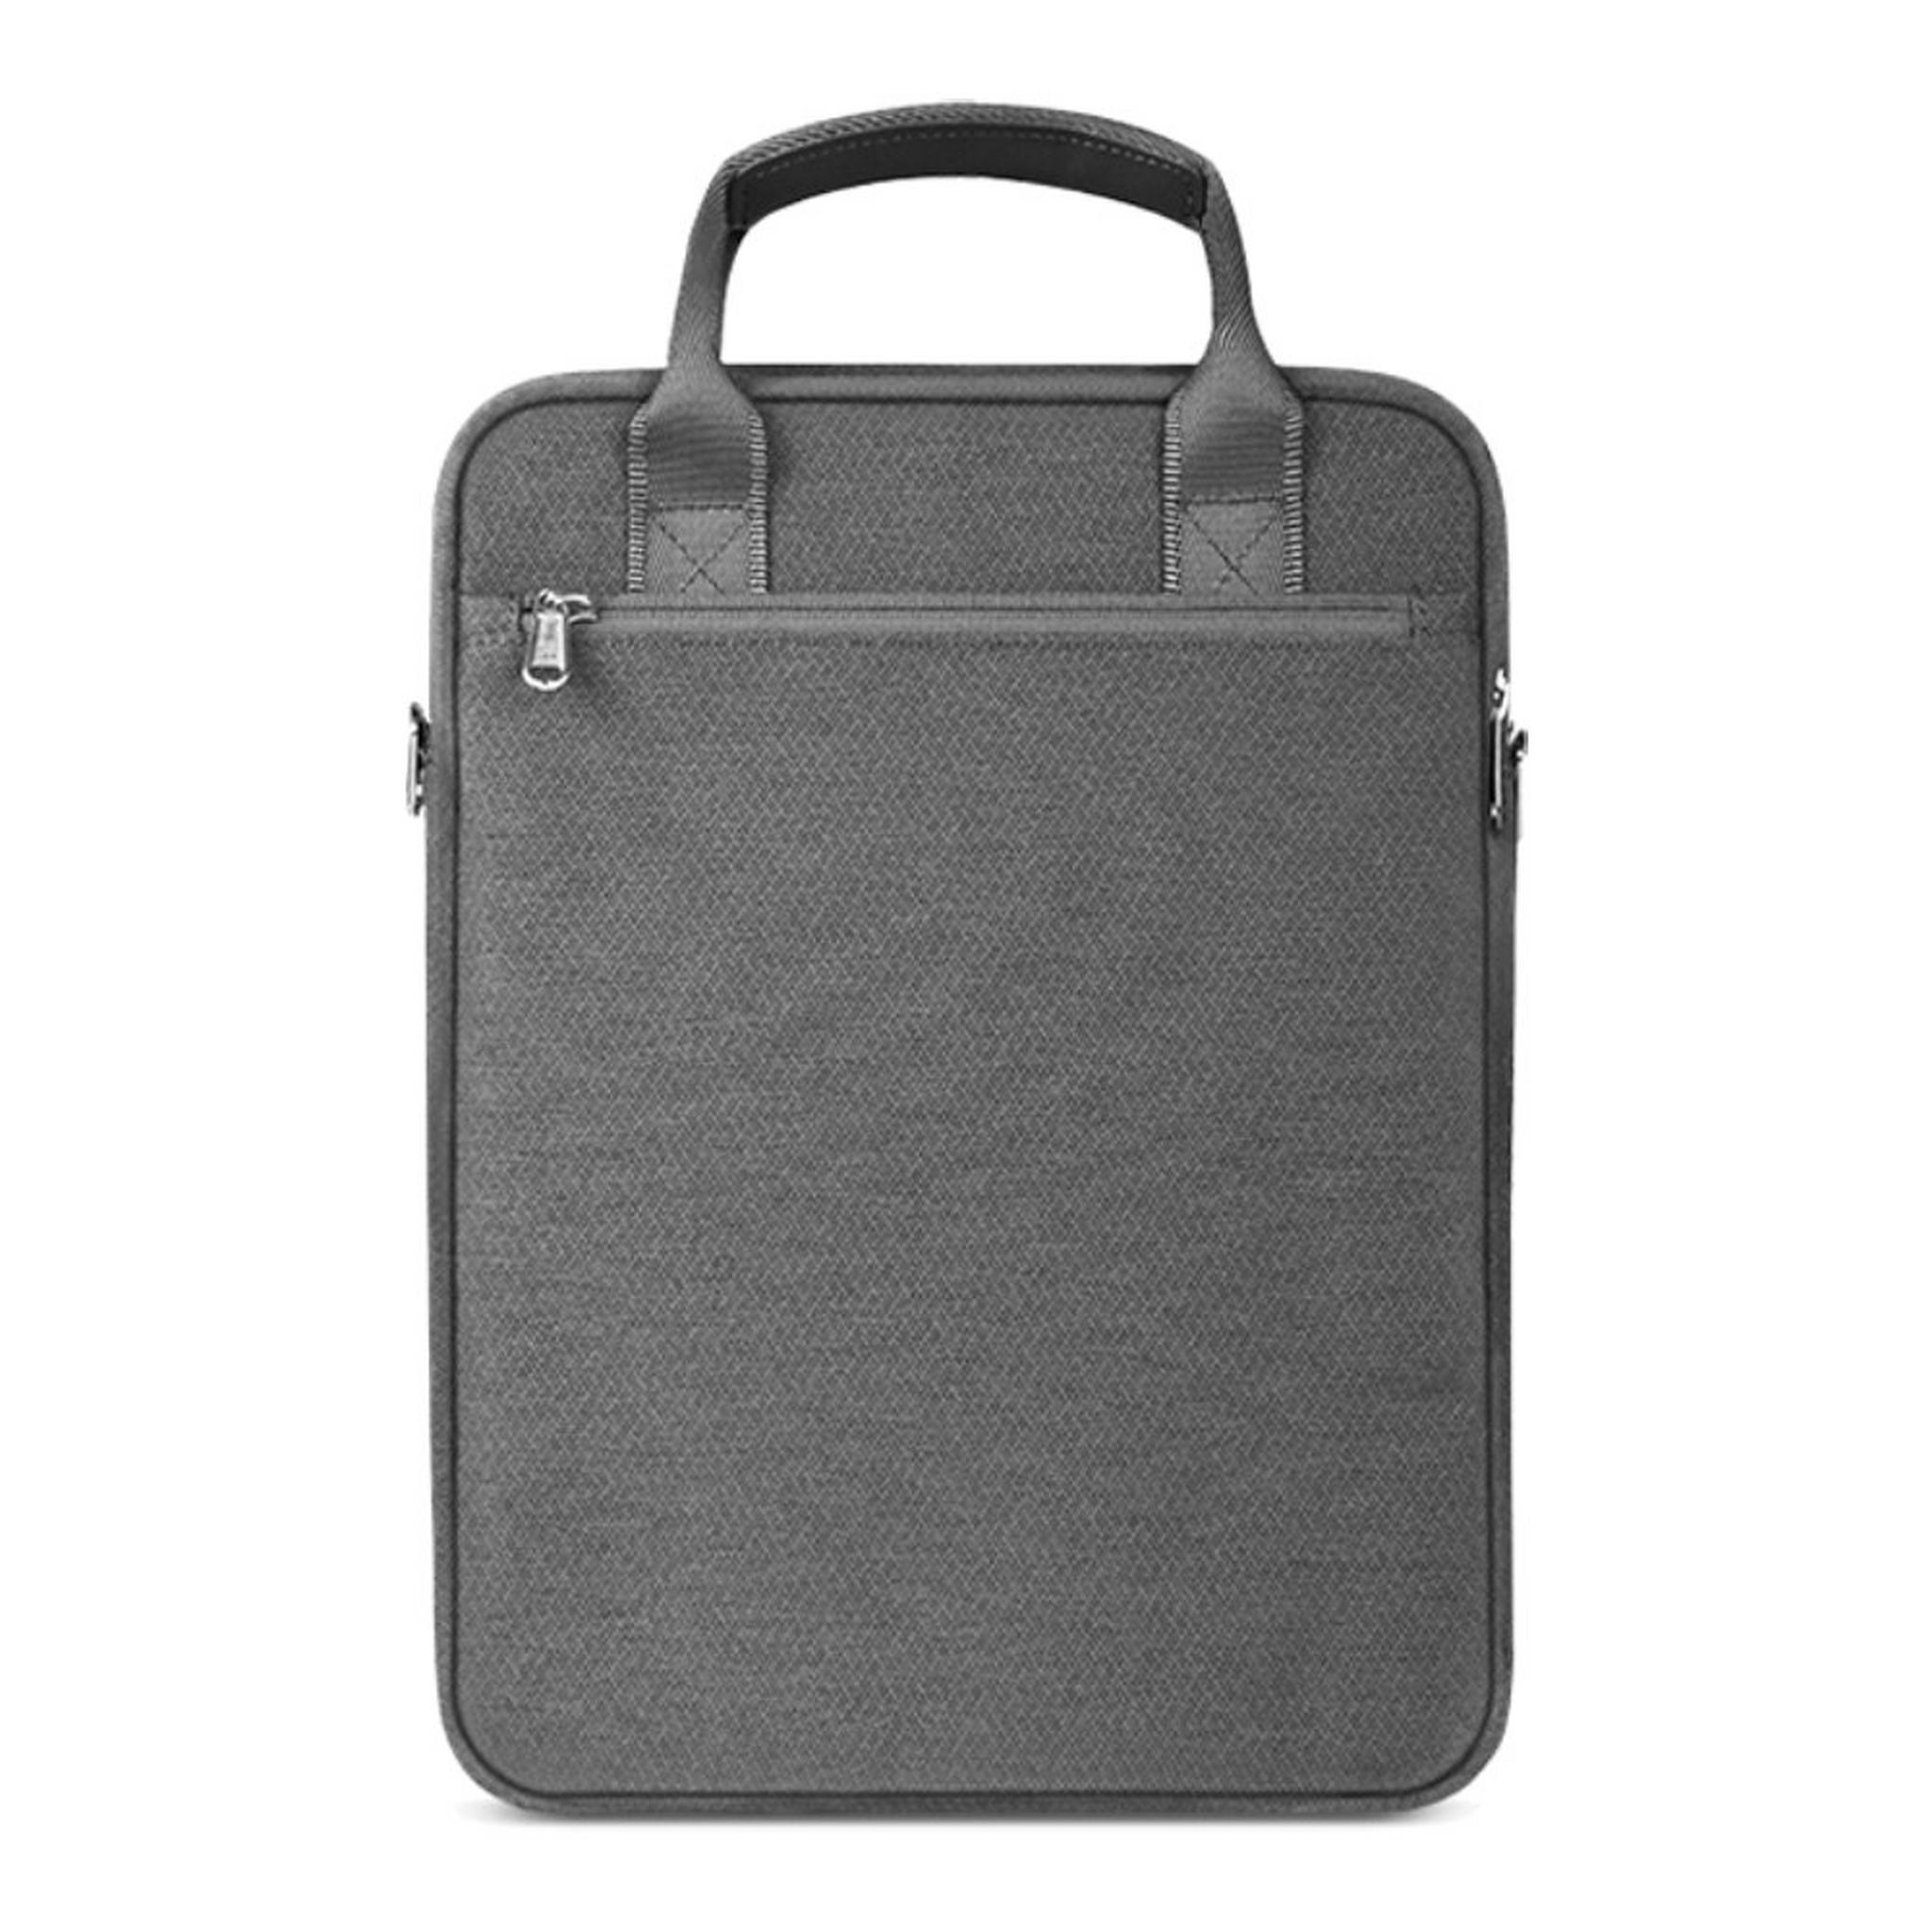 حقيبة لابتوب الفا عمودية بحجم 13.3 بوصة من ويو - رمادي